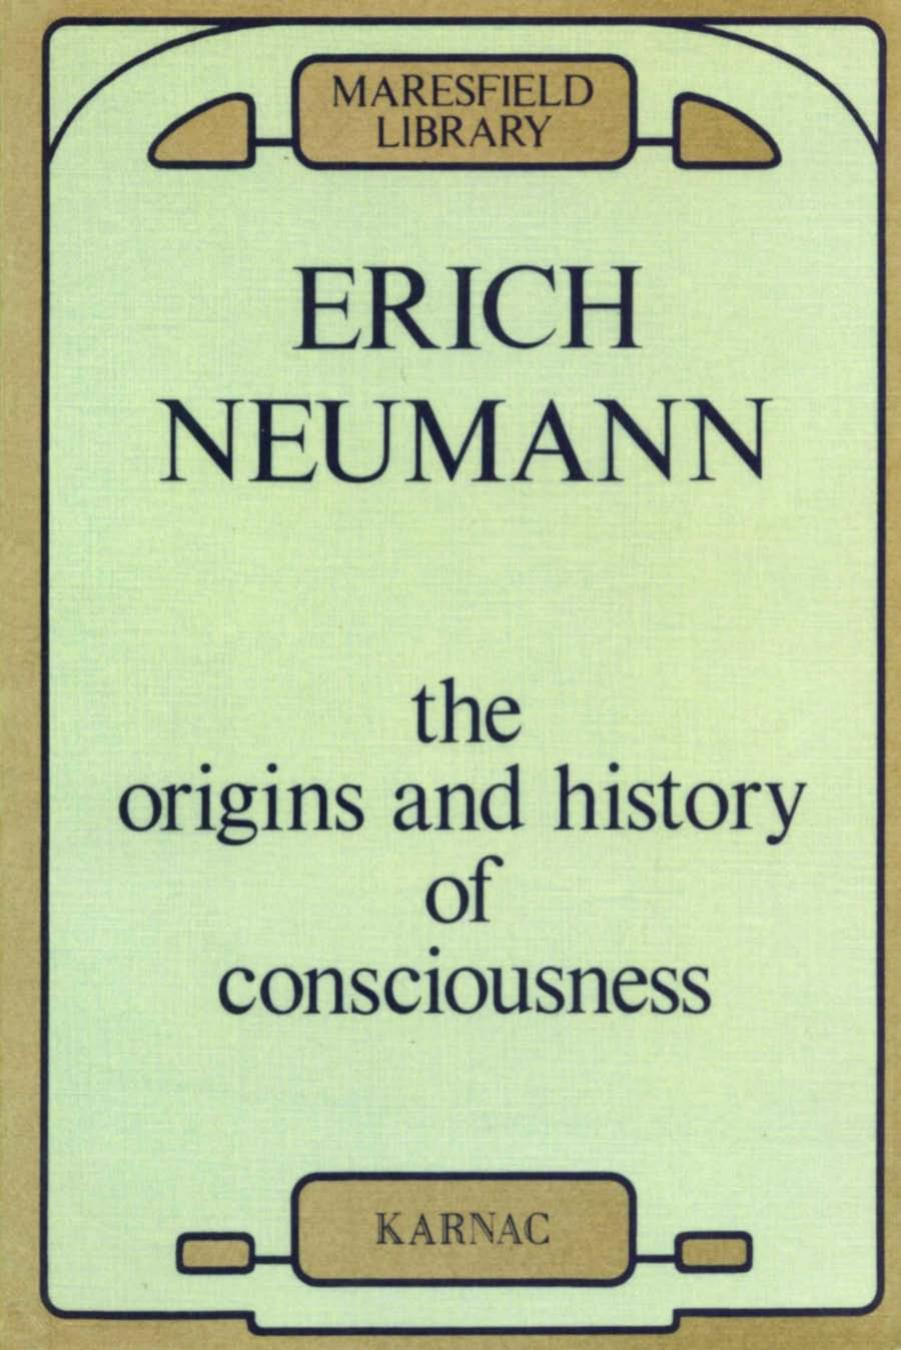 Origins and History of Consciousness